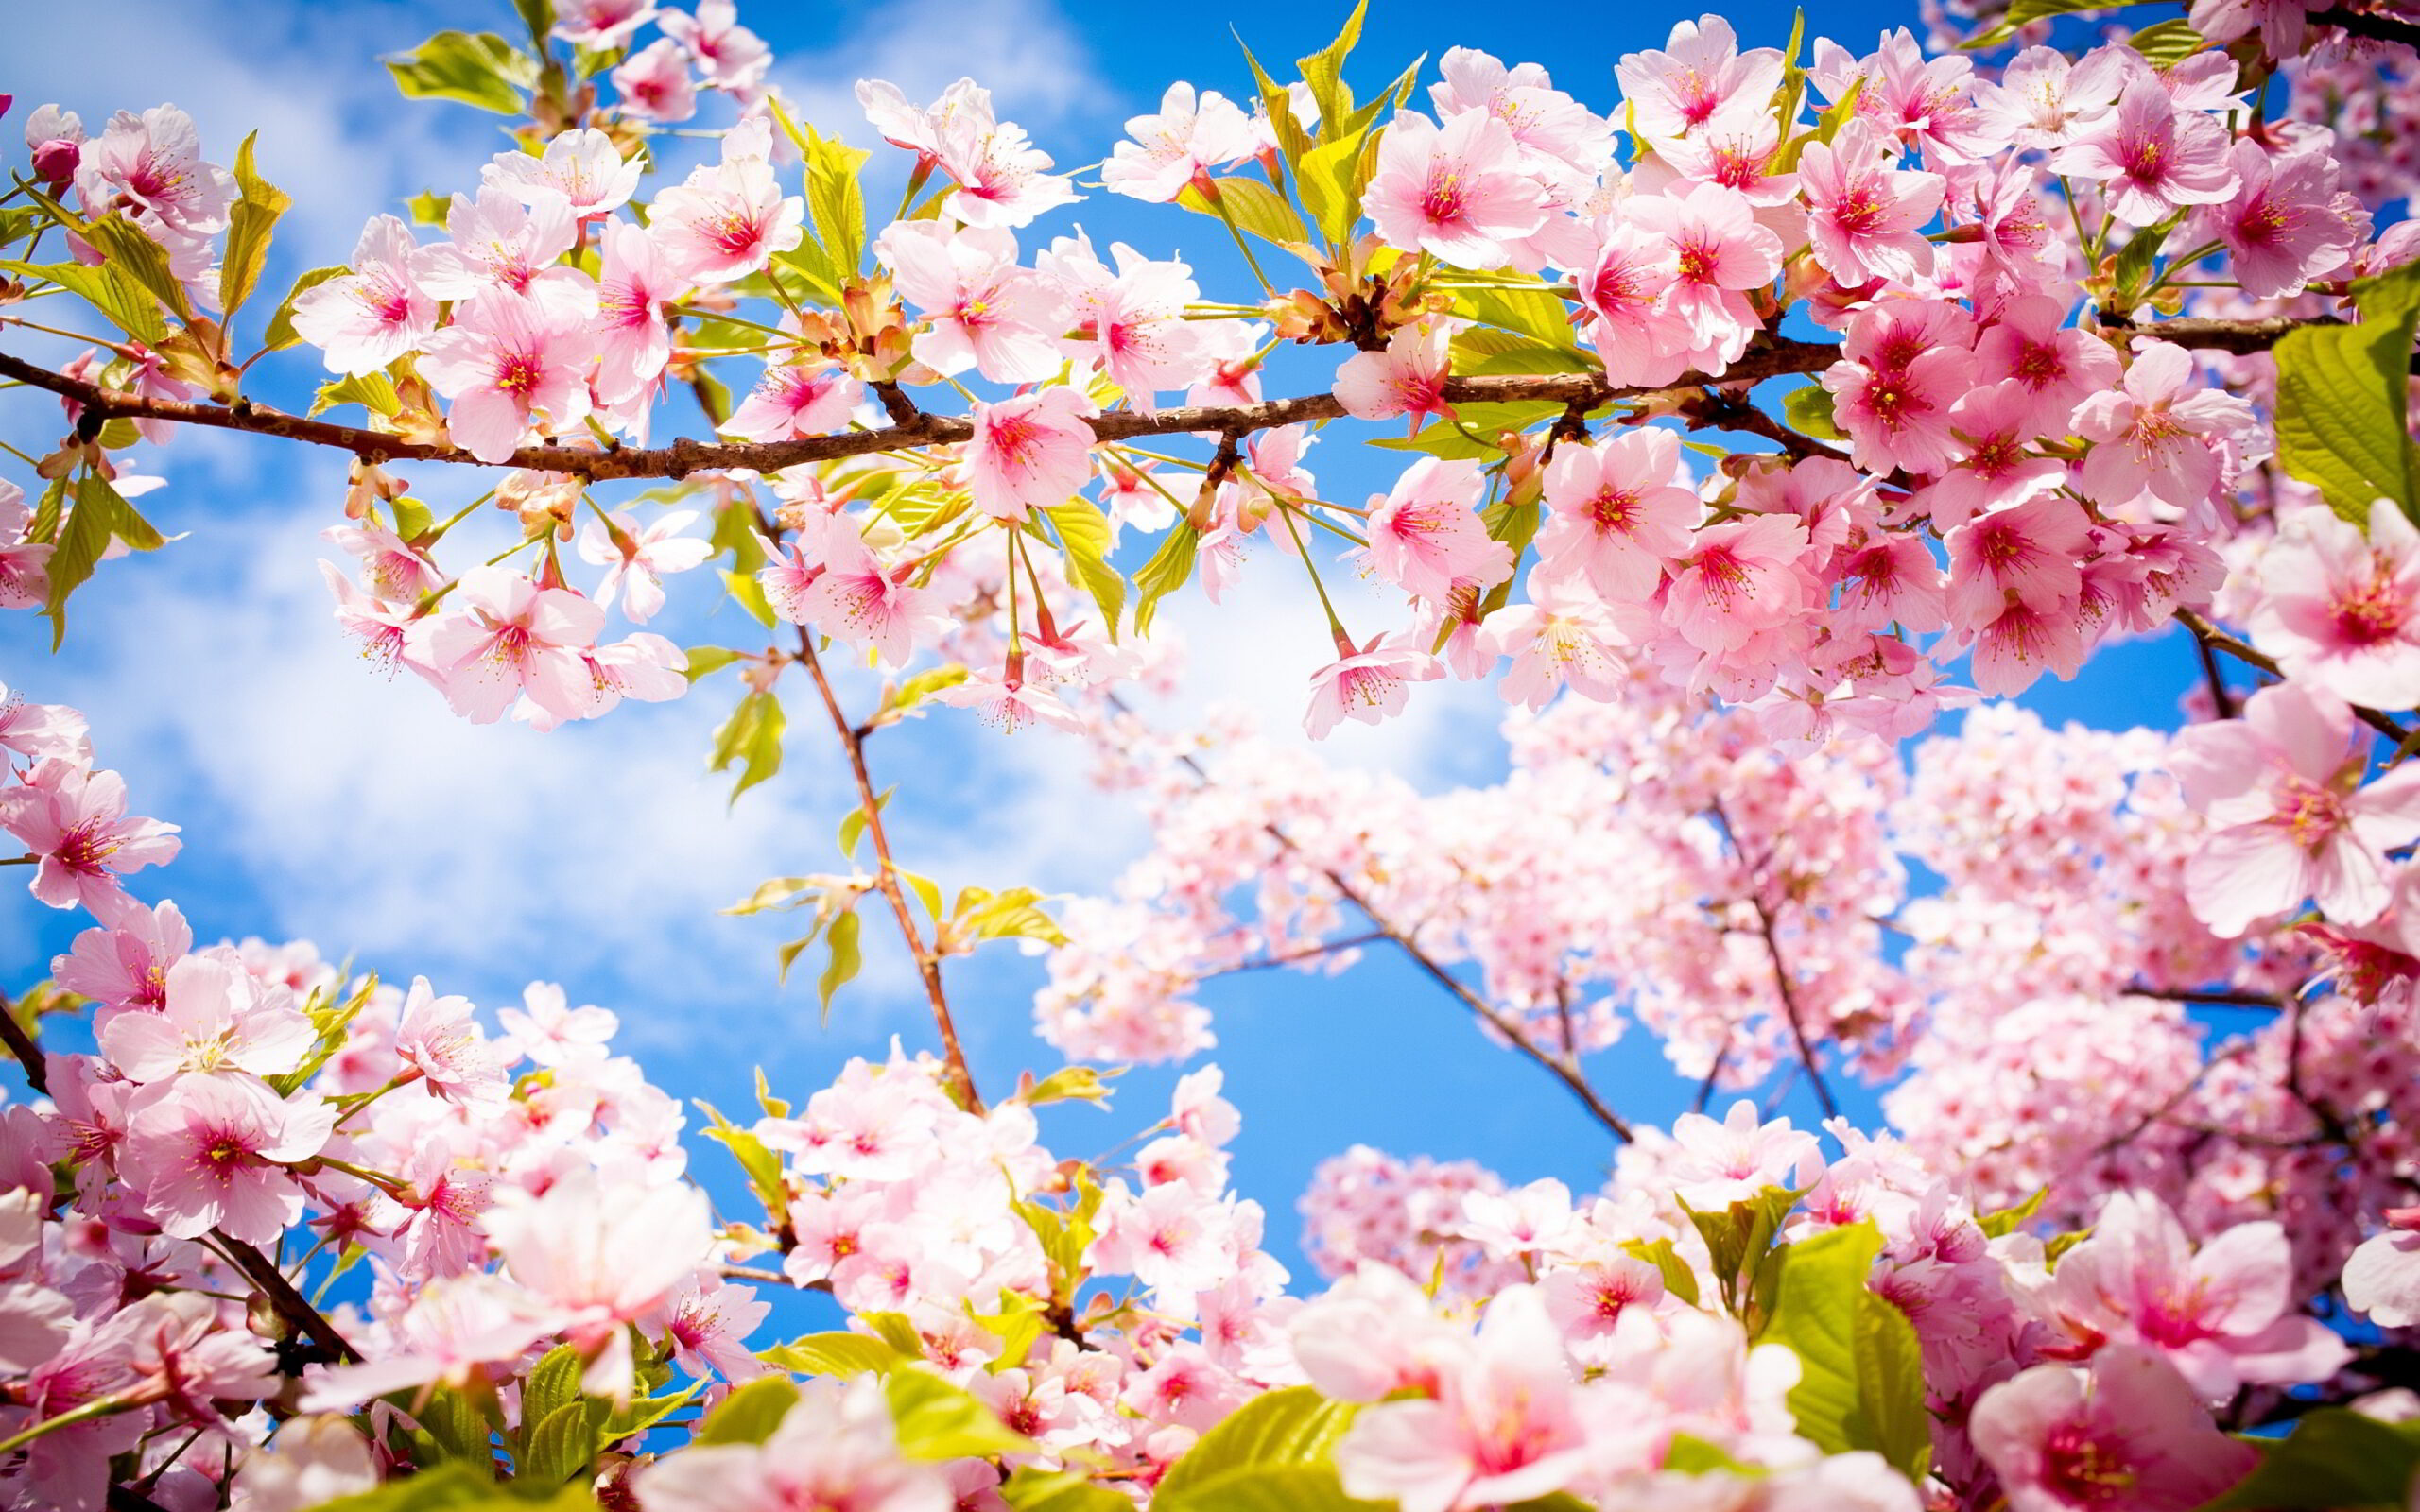 6356265956775845191660892217_cherry-blossom-spring1